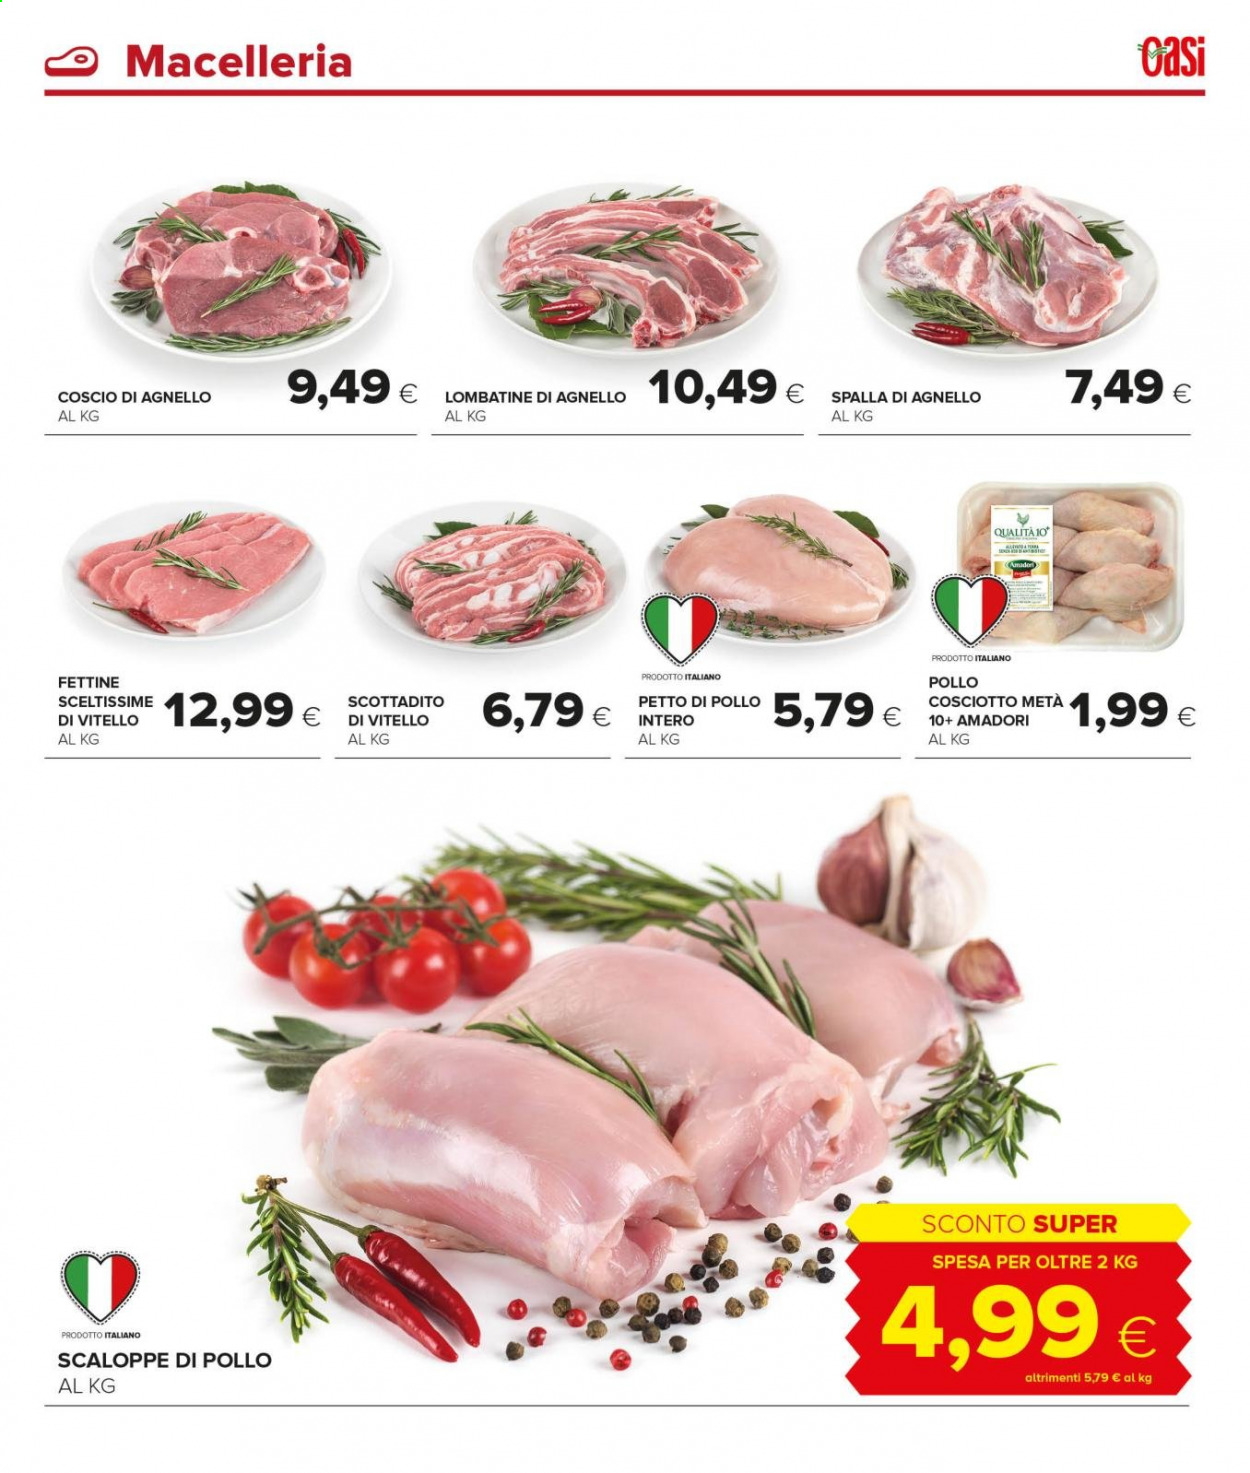 thumbnail - Volantino Oasi - 6/3/2021 - 19/3/2021 - Prodotti in offerta - petto di pollo, scaloppine di pollo, Amadori, vitello. Pagina 3.